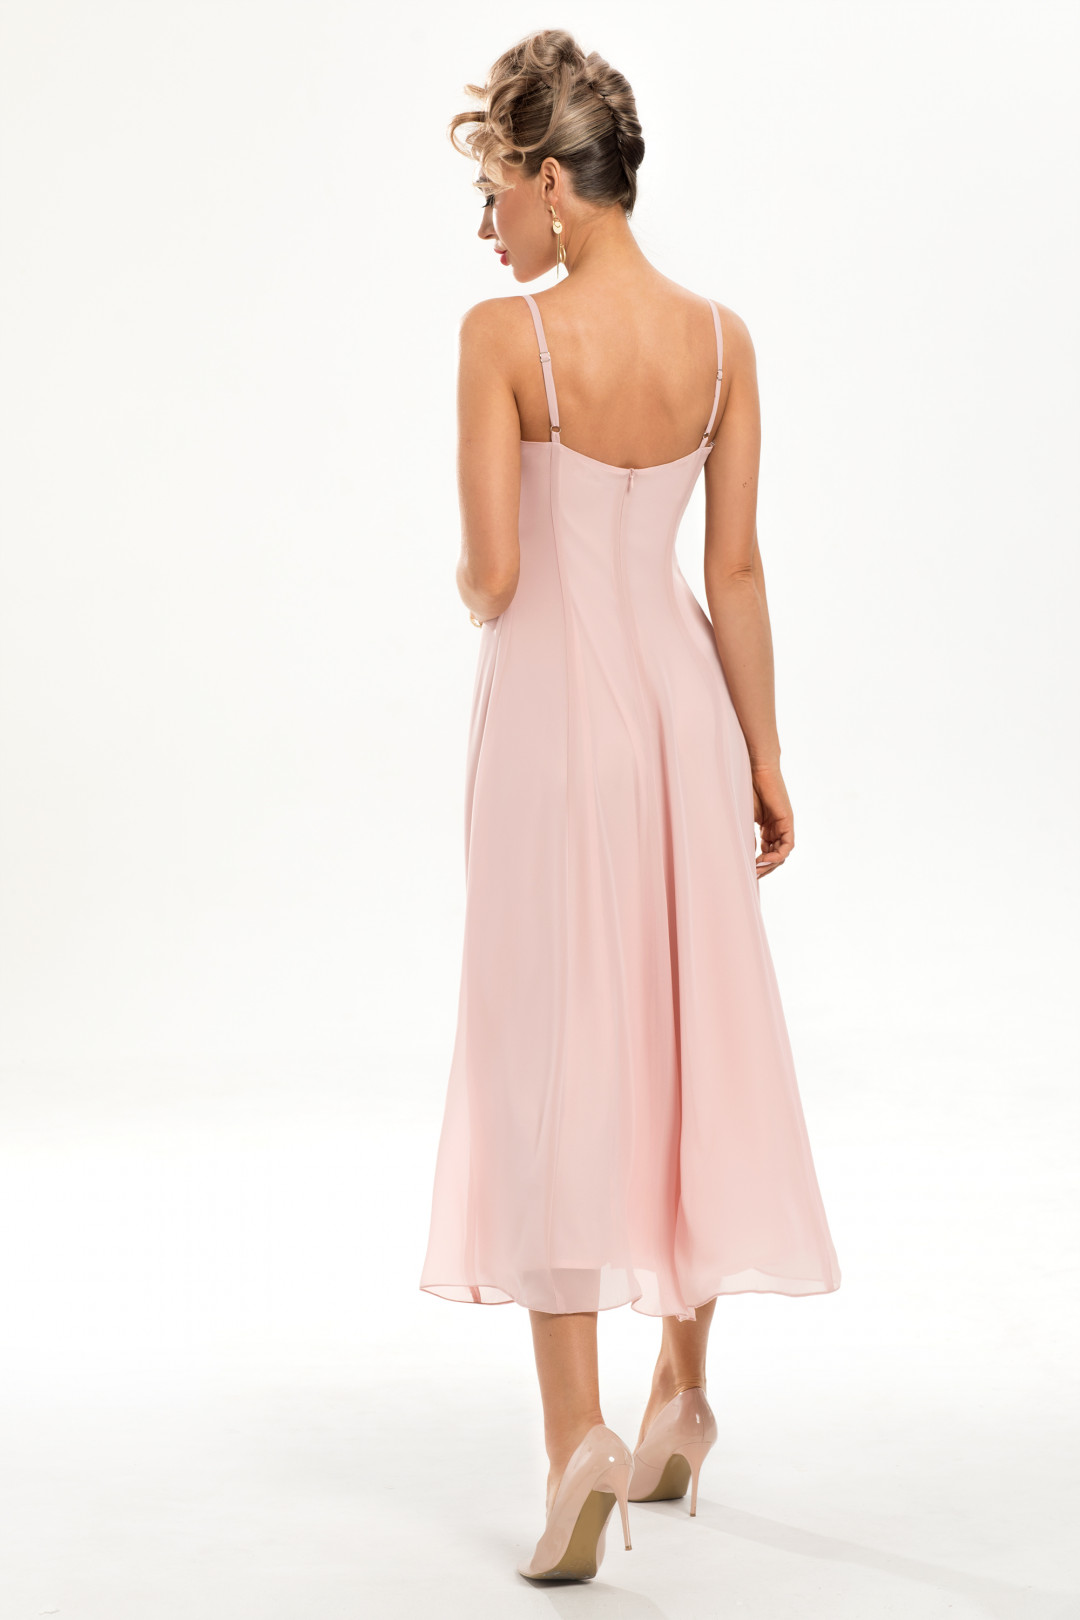 Платье Golden Valley 4785 розовый